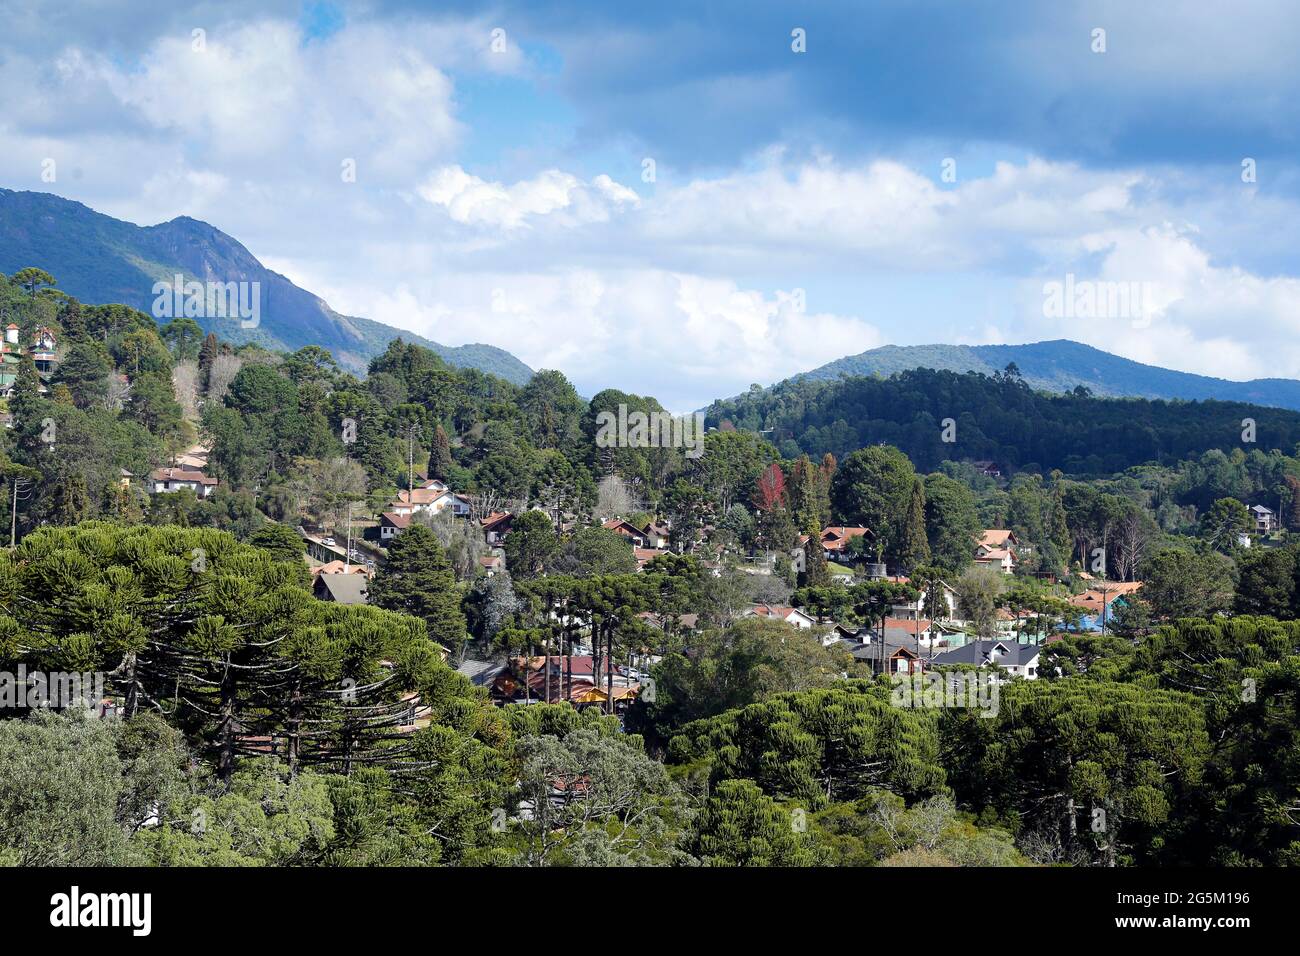 Vue sur la nature et les bâtiments au milieu des montagnes de Monte Verde, quartier de Camanducaia, intérieur de Minas Gerais Banque D'Images